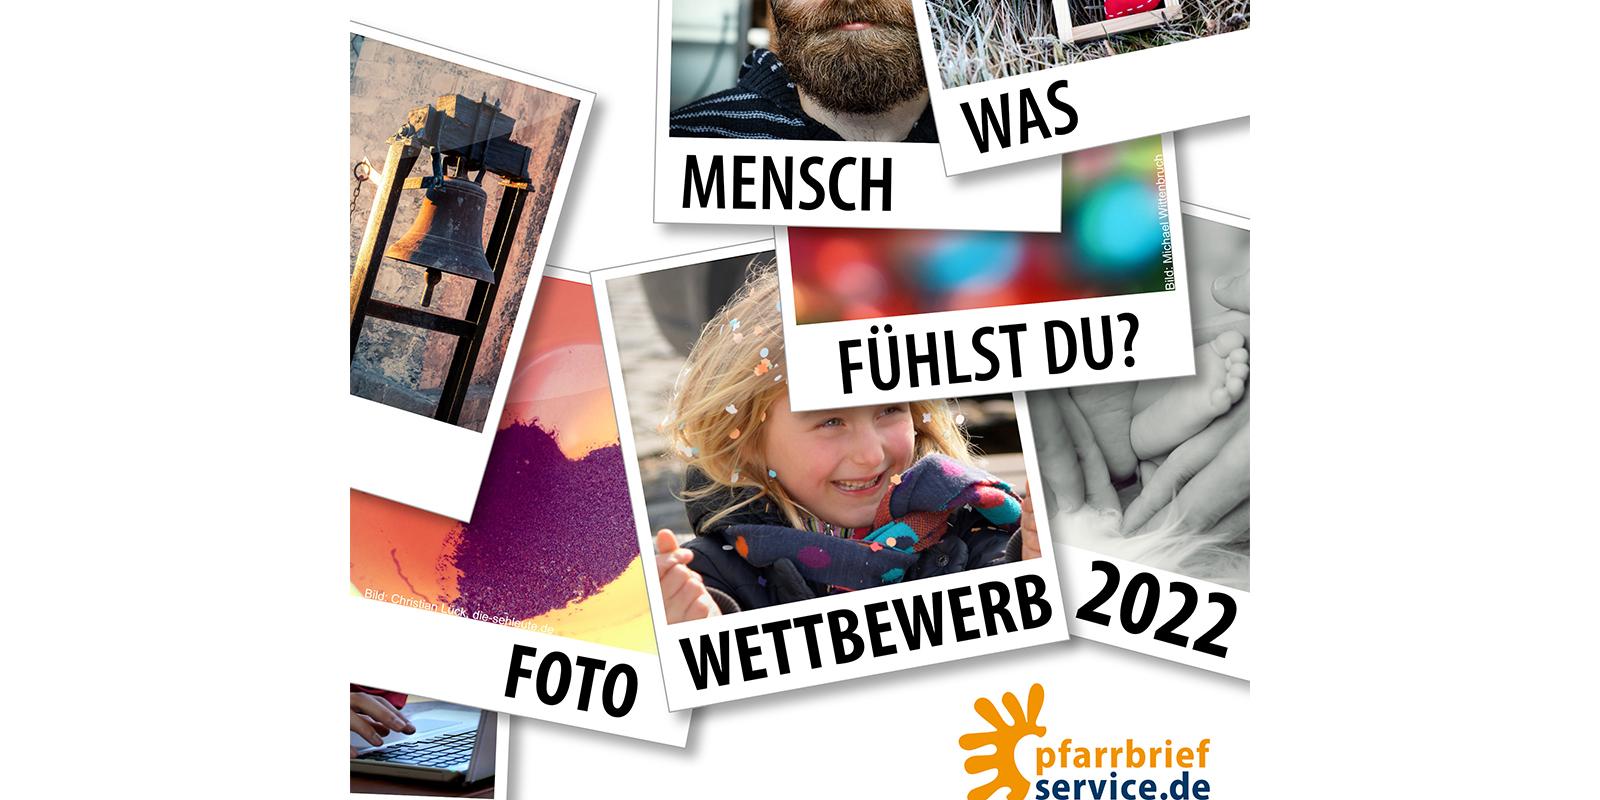 Motto des Fotowettbewerbs 2022 von Pfarrbriefservice.de